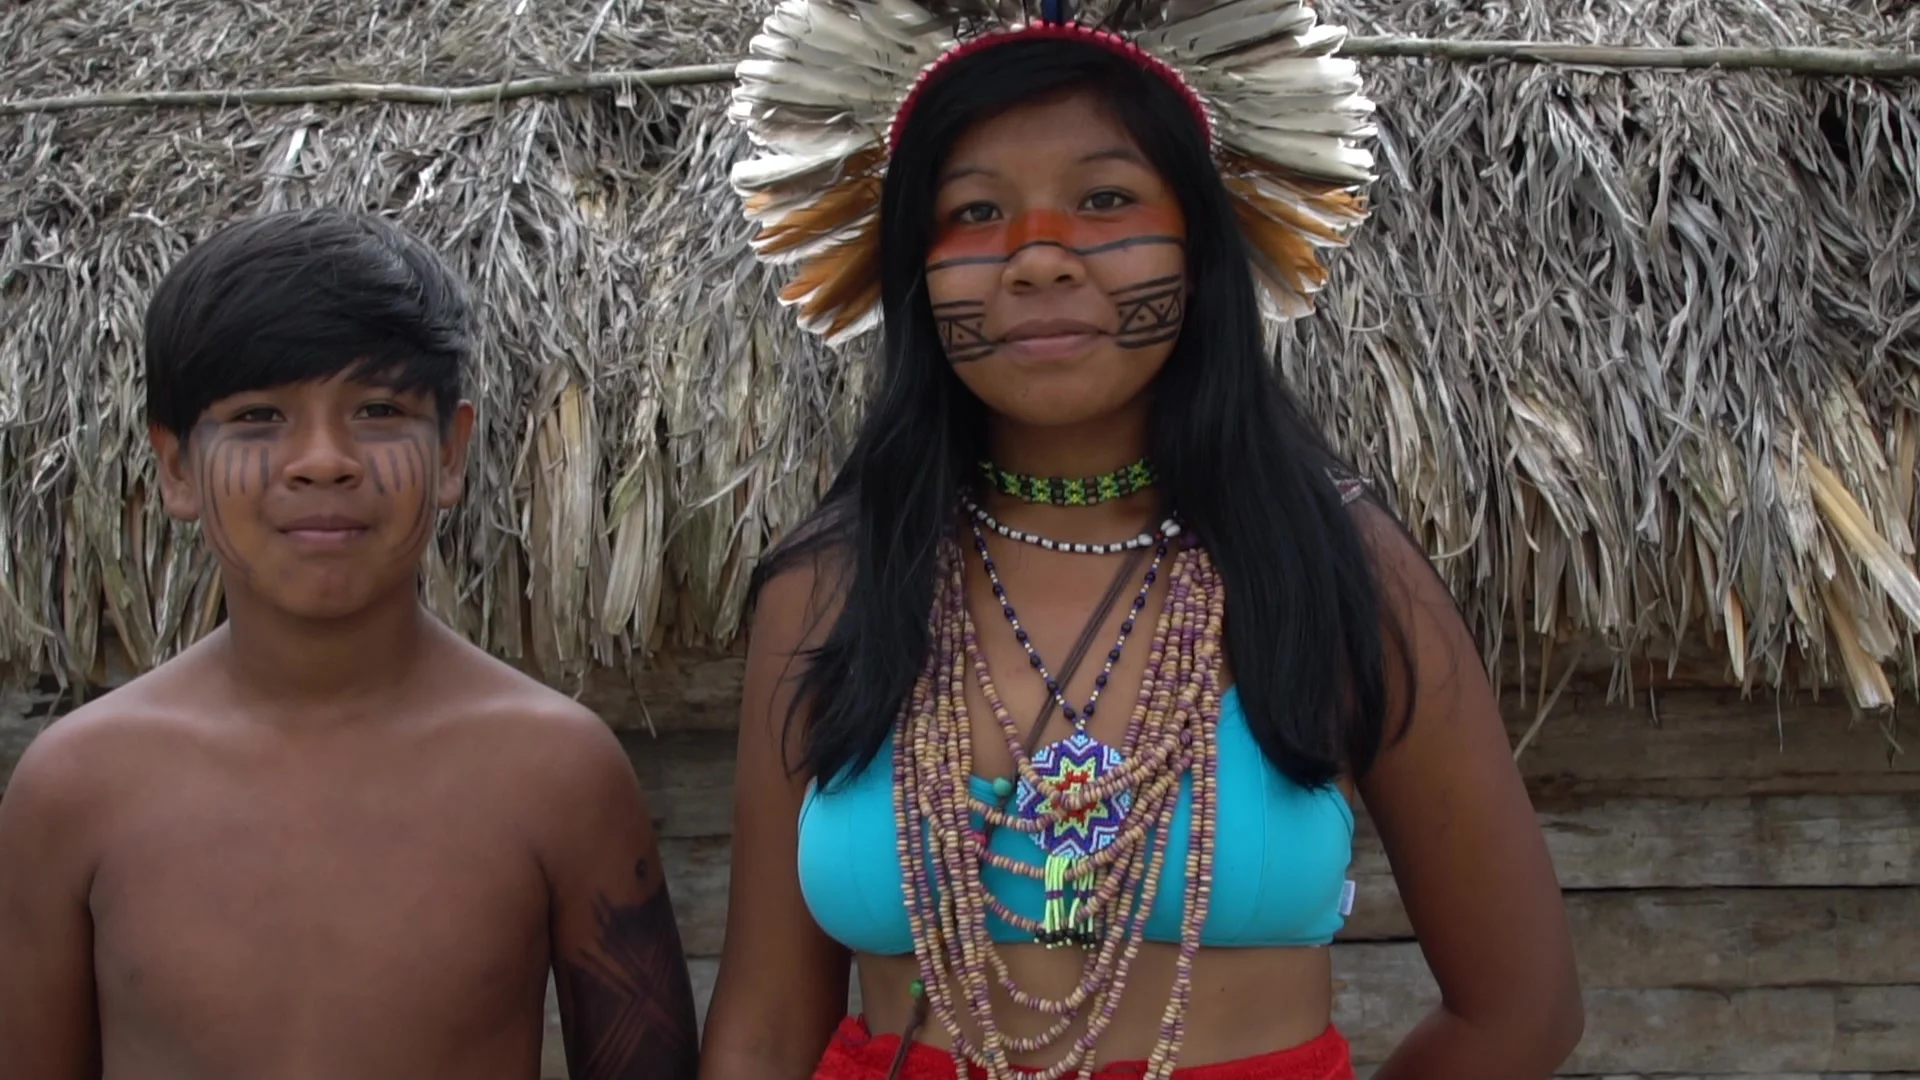 brothers-tupi-guarani-tribe-brazil-footage-074909694_prevstill.jpeg